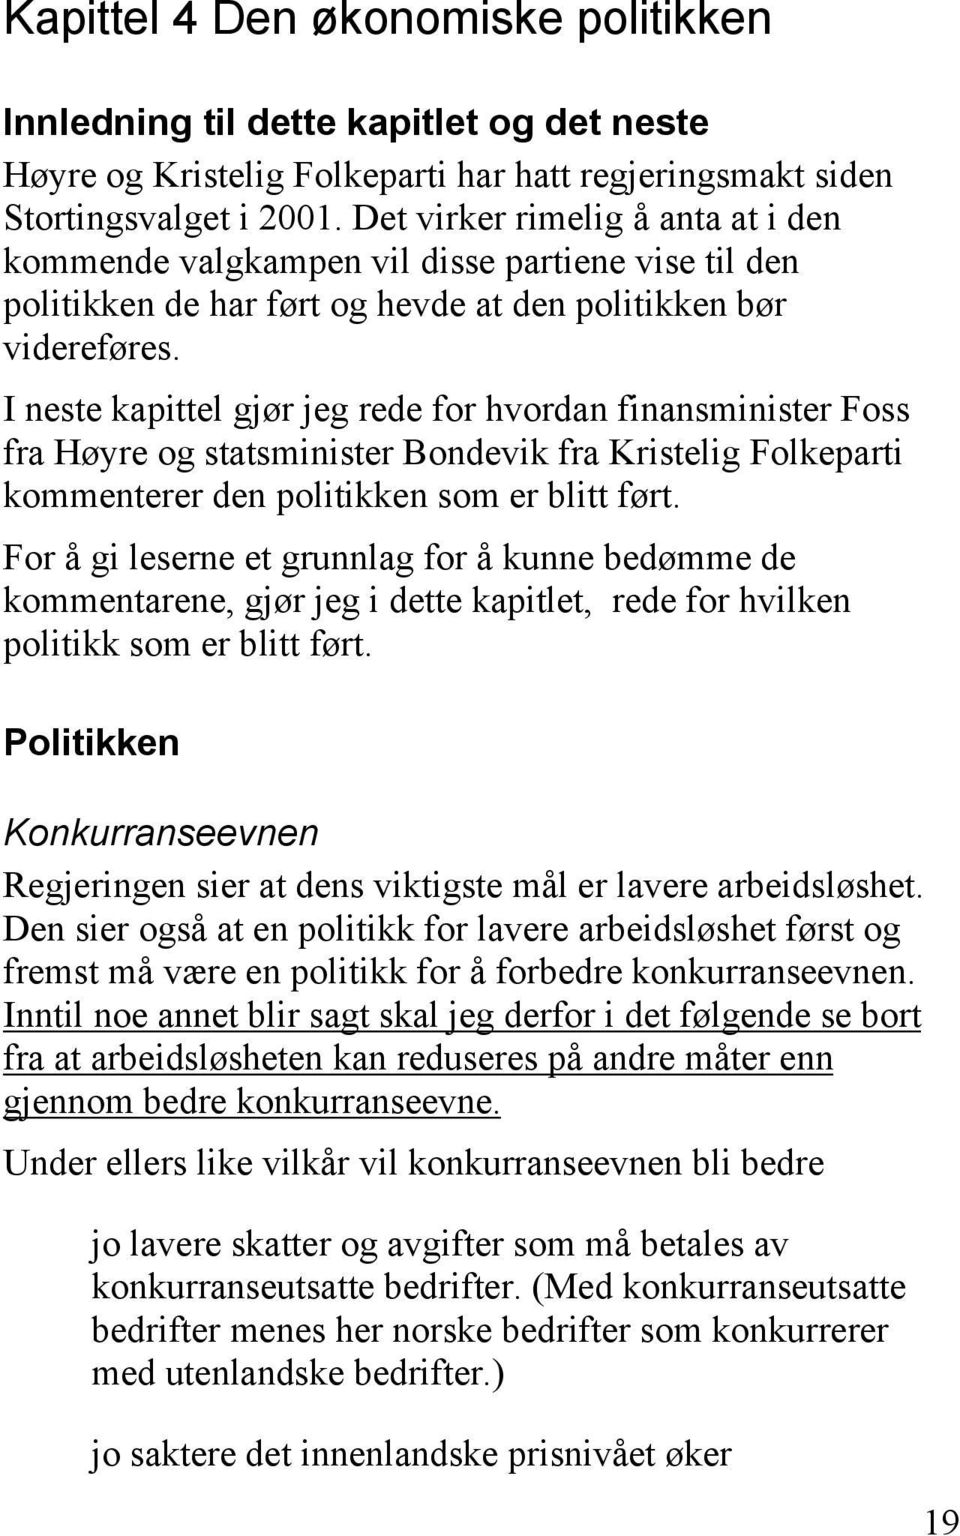 I neste kapittel gjør jeg rede for hvordan finansminister Foss fra Høyre og statsminister Bondevik fra Kristelig Folkeparti kommenterer den politikken som er blitt ført.